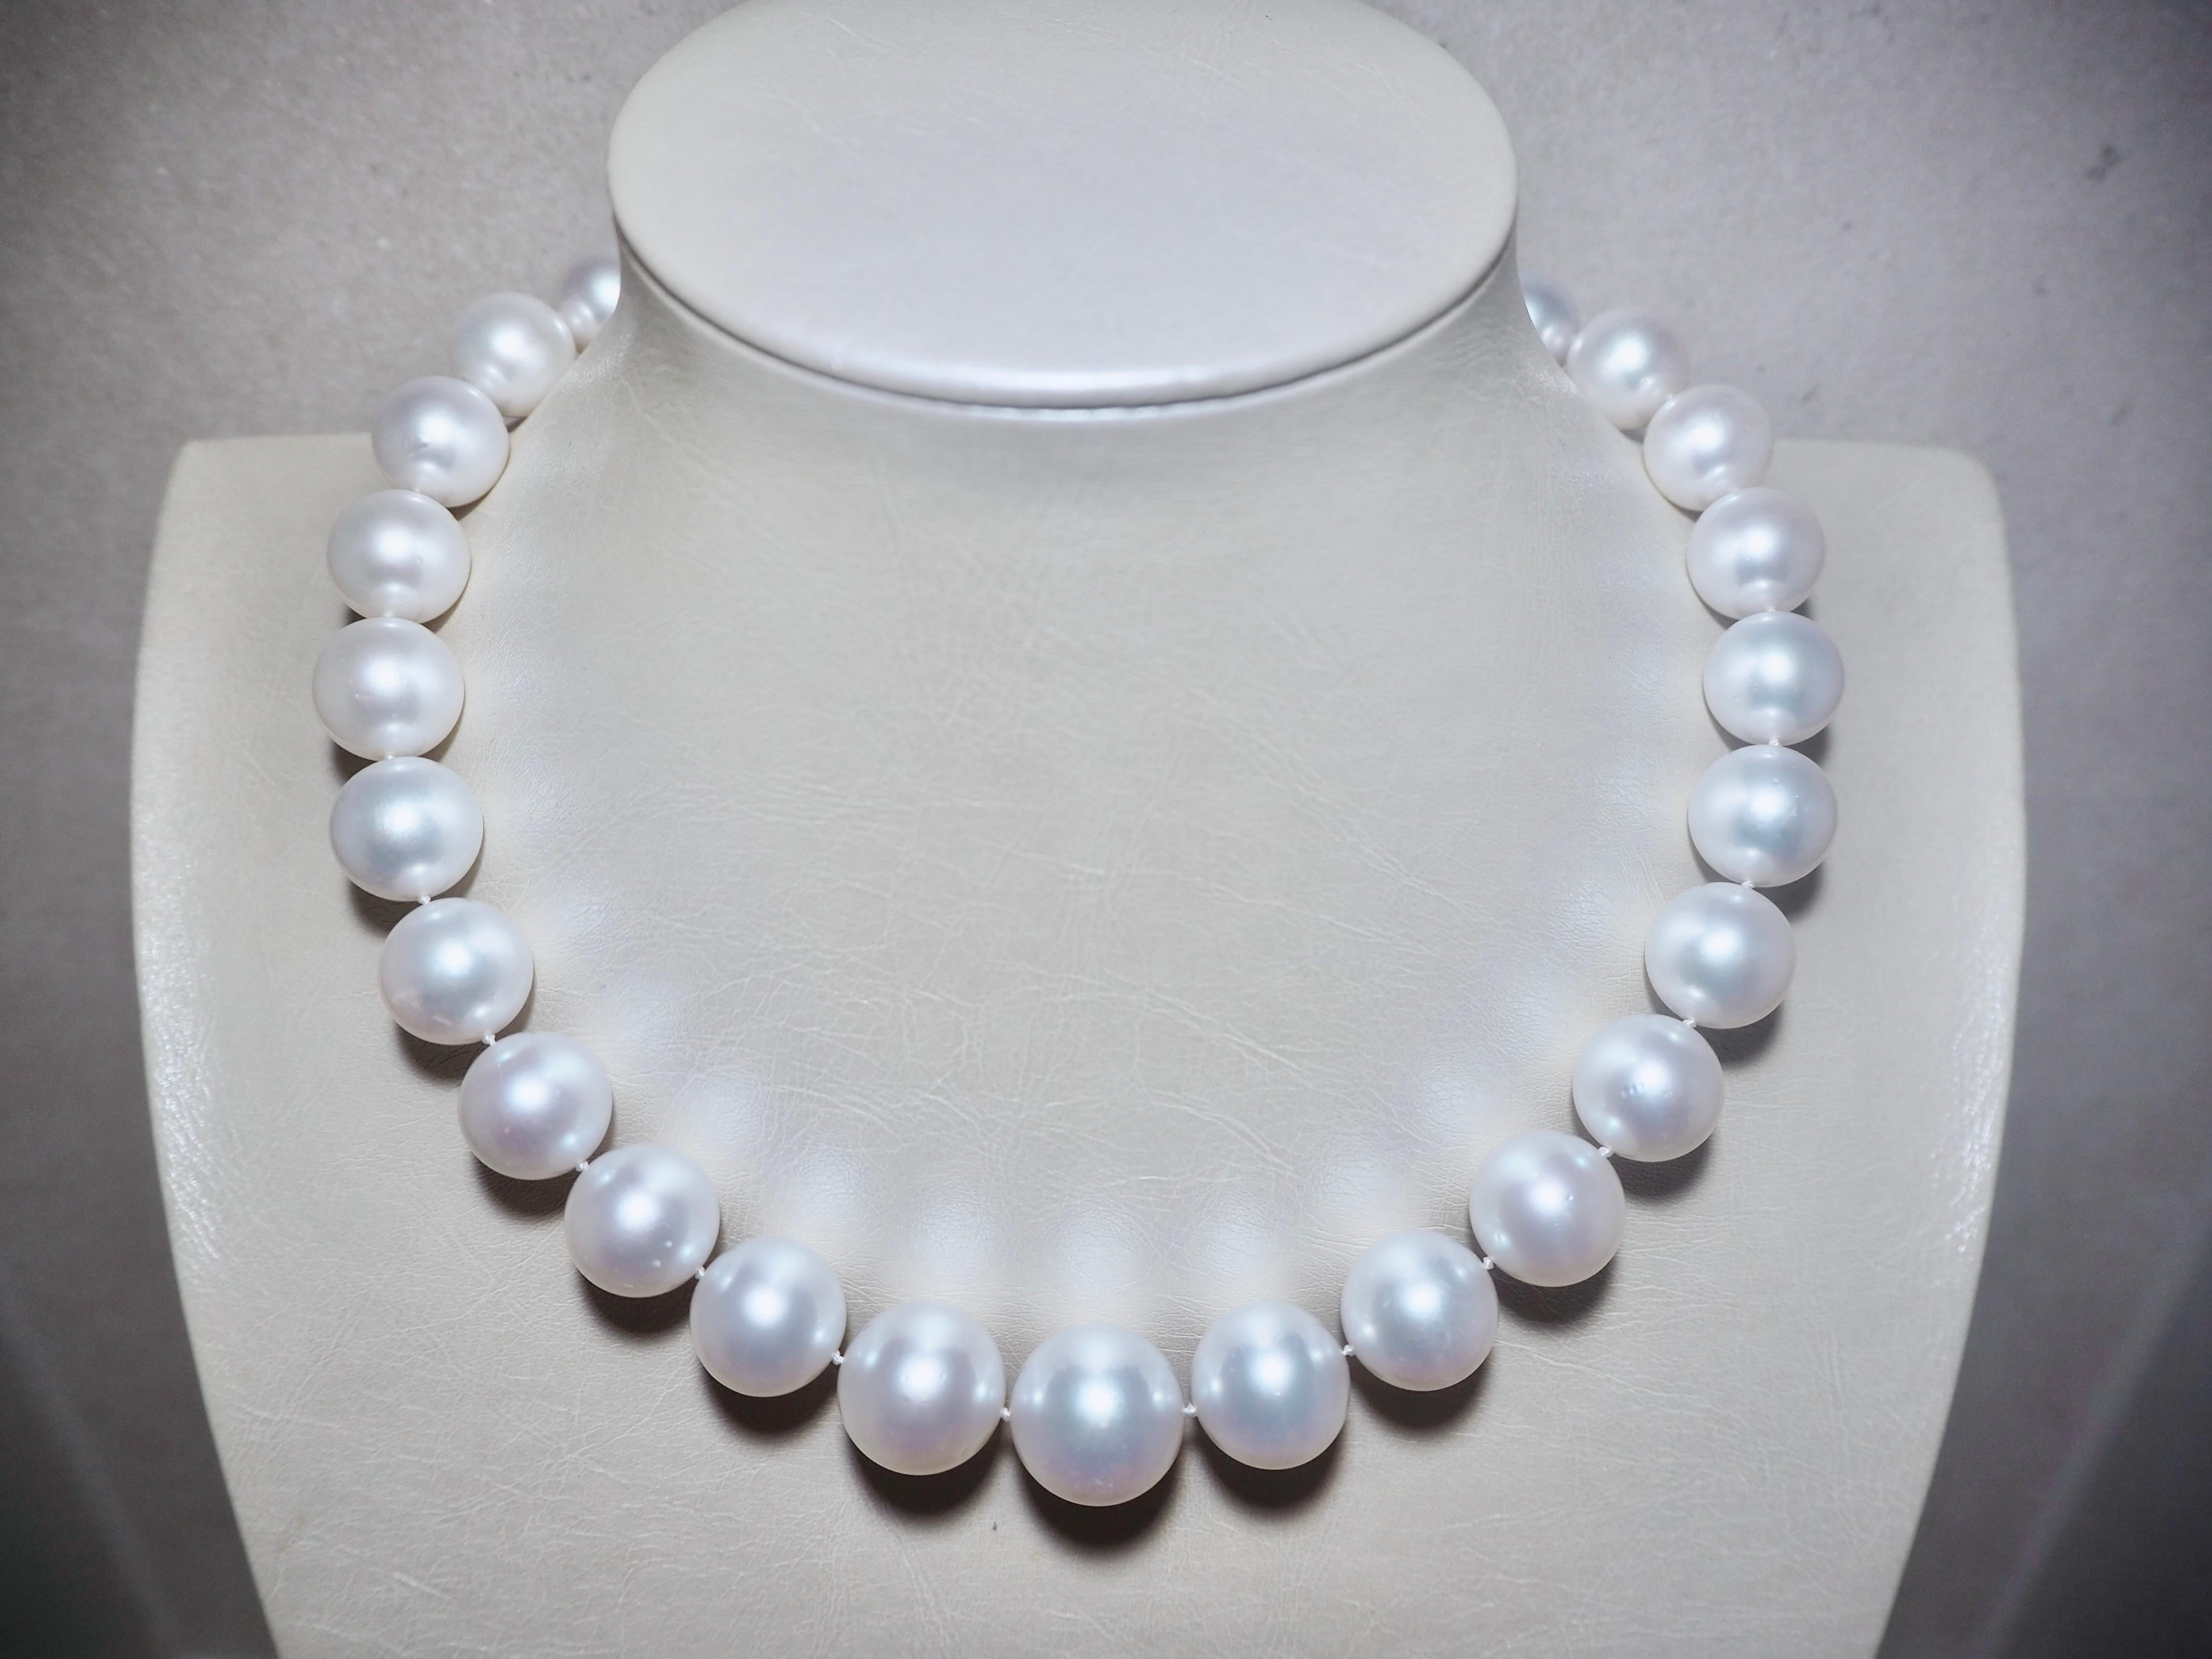 Ozean Südsee Perlenkette - 29 Perlen
18 mm Schließe aus 18 K Weißgold mit 5,44 Karat 188 runden Brillanten.
18x13,5mm mm Australische Südsee-Zuchtperlen 

Halskette Metalloberfläche: Hochglanz 
Gesamtgewicht des Artikels (g): 137,6
Farbe Grad: